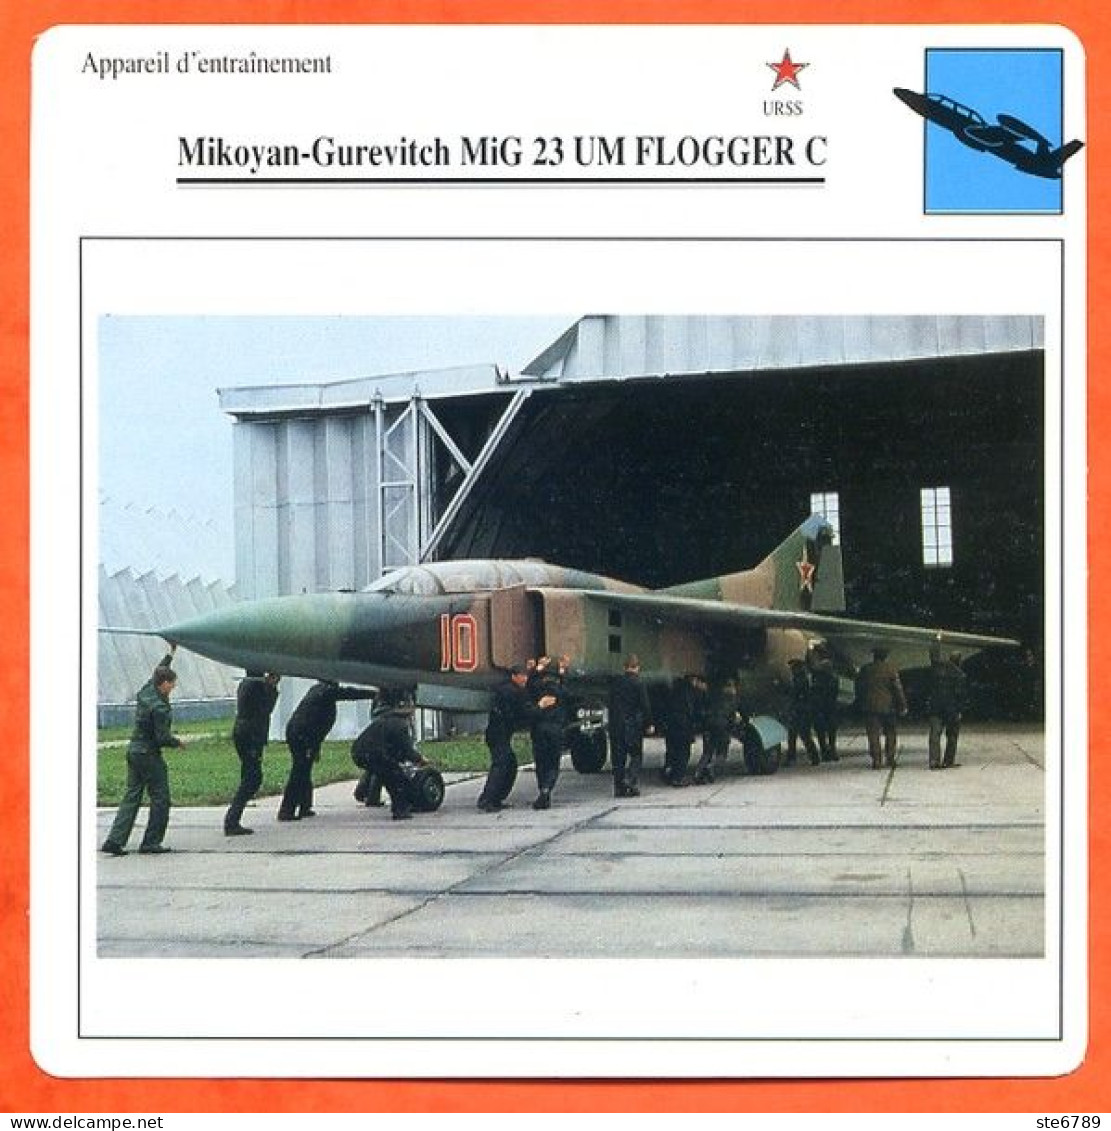 Fiche Aviation Mikoyan Gurevitch MiG 23 UM FLOGGER C  / Avion Appareil D'entrainement URSS Avions - Flugzeuge